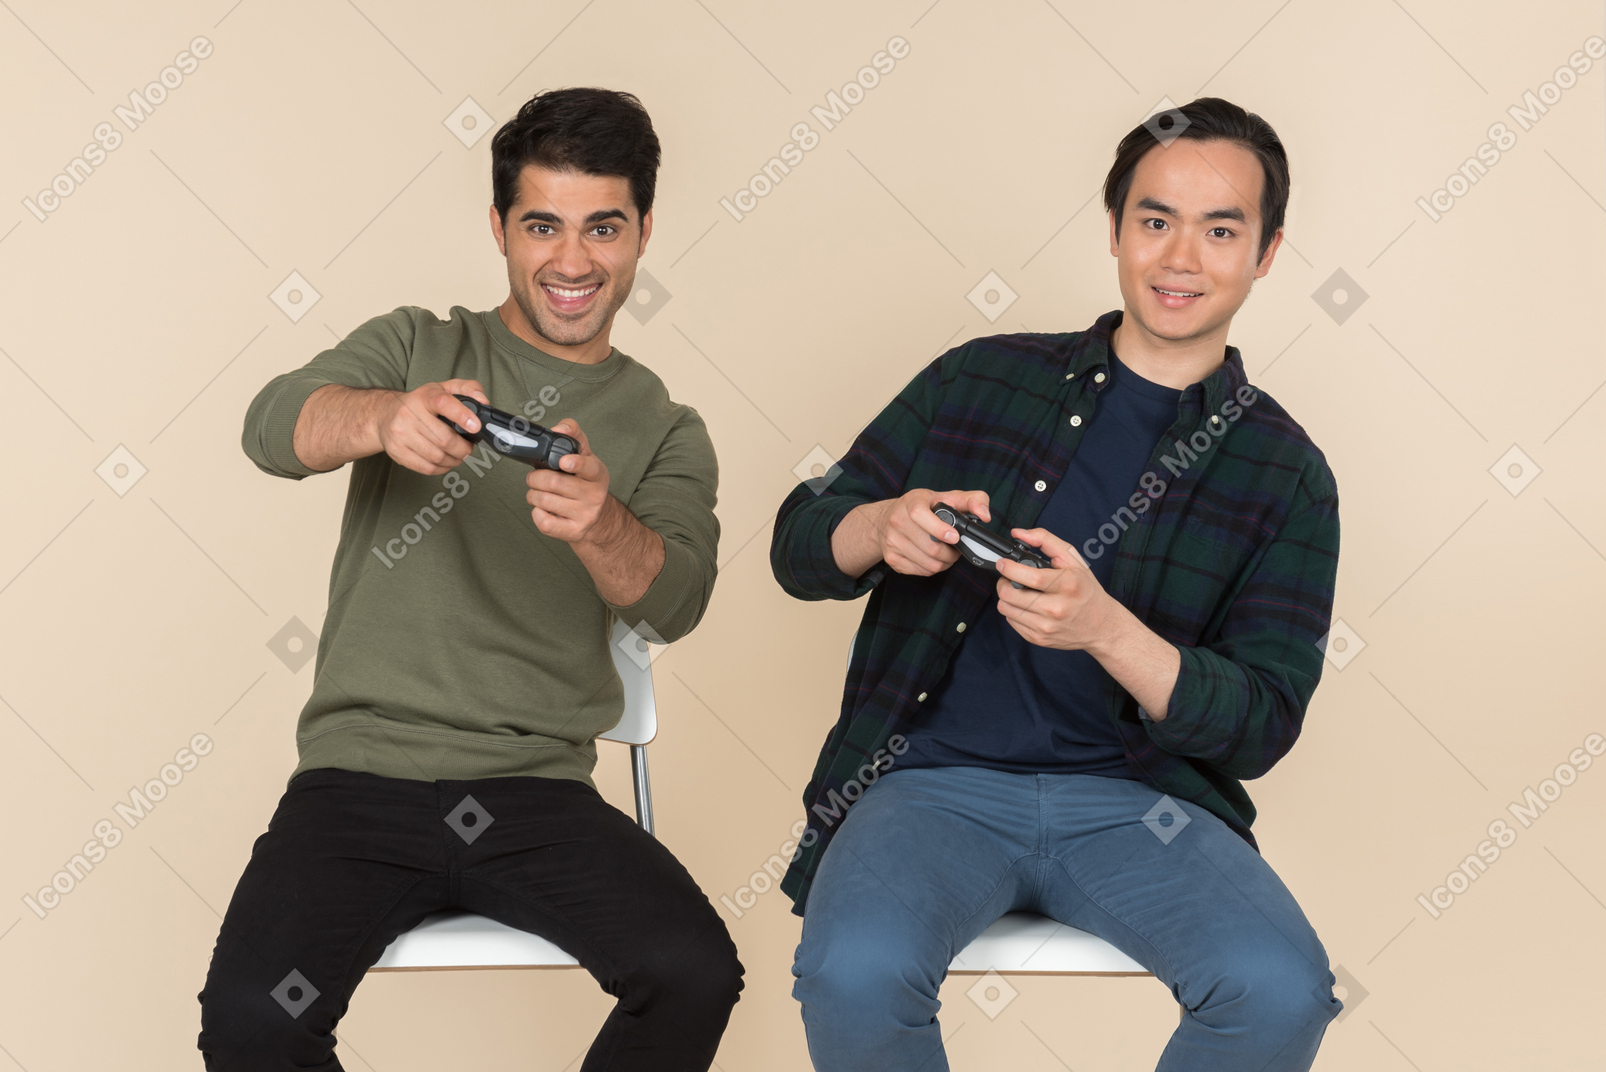 Межрасовые друзья сидят в креслах и играют в видеоигры